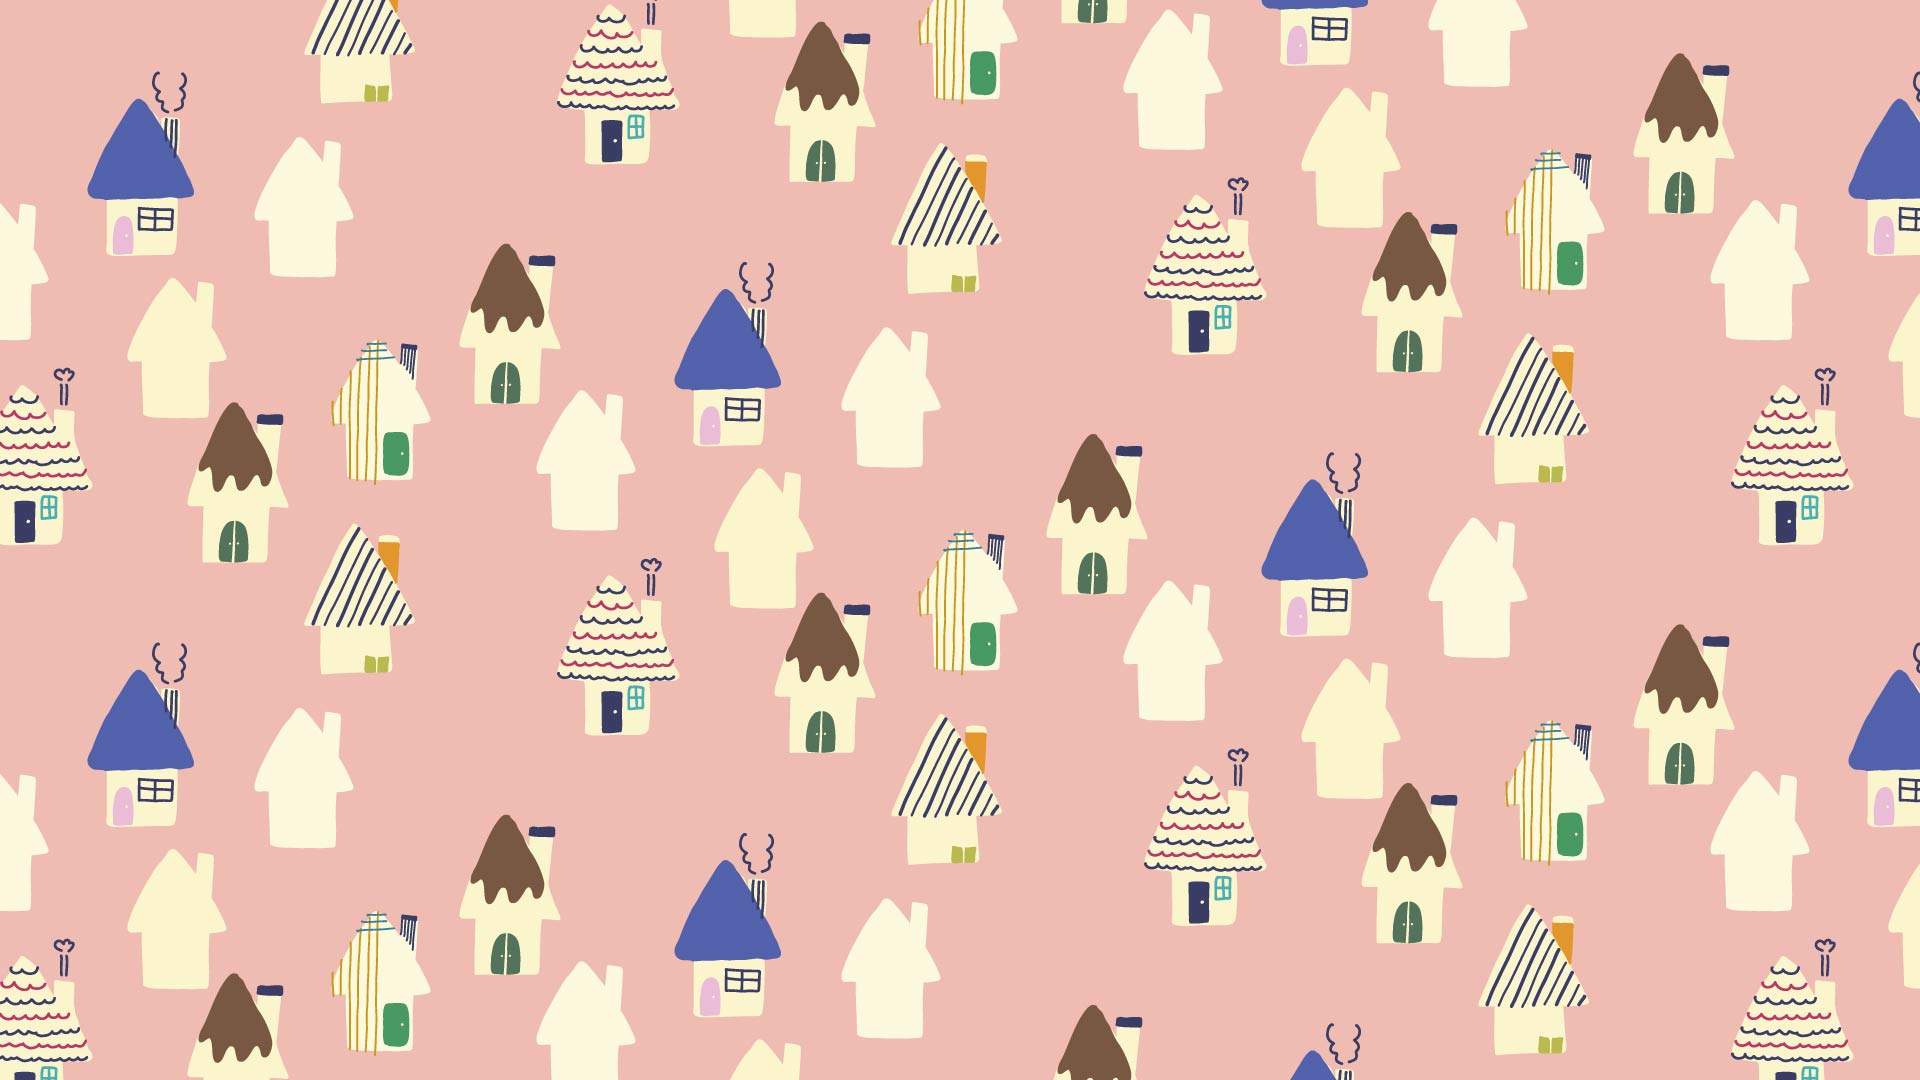 サーモンピンクの背景に色々な模様の家々のパターン